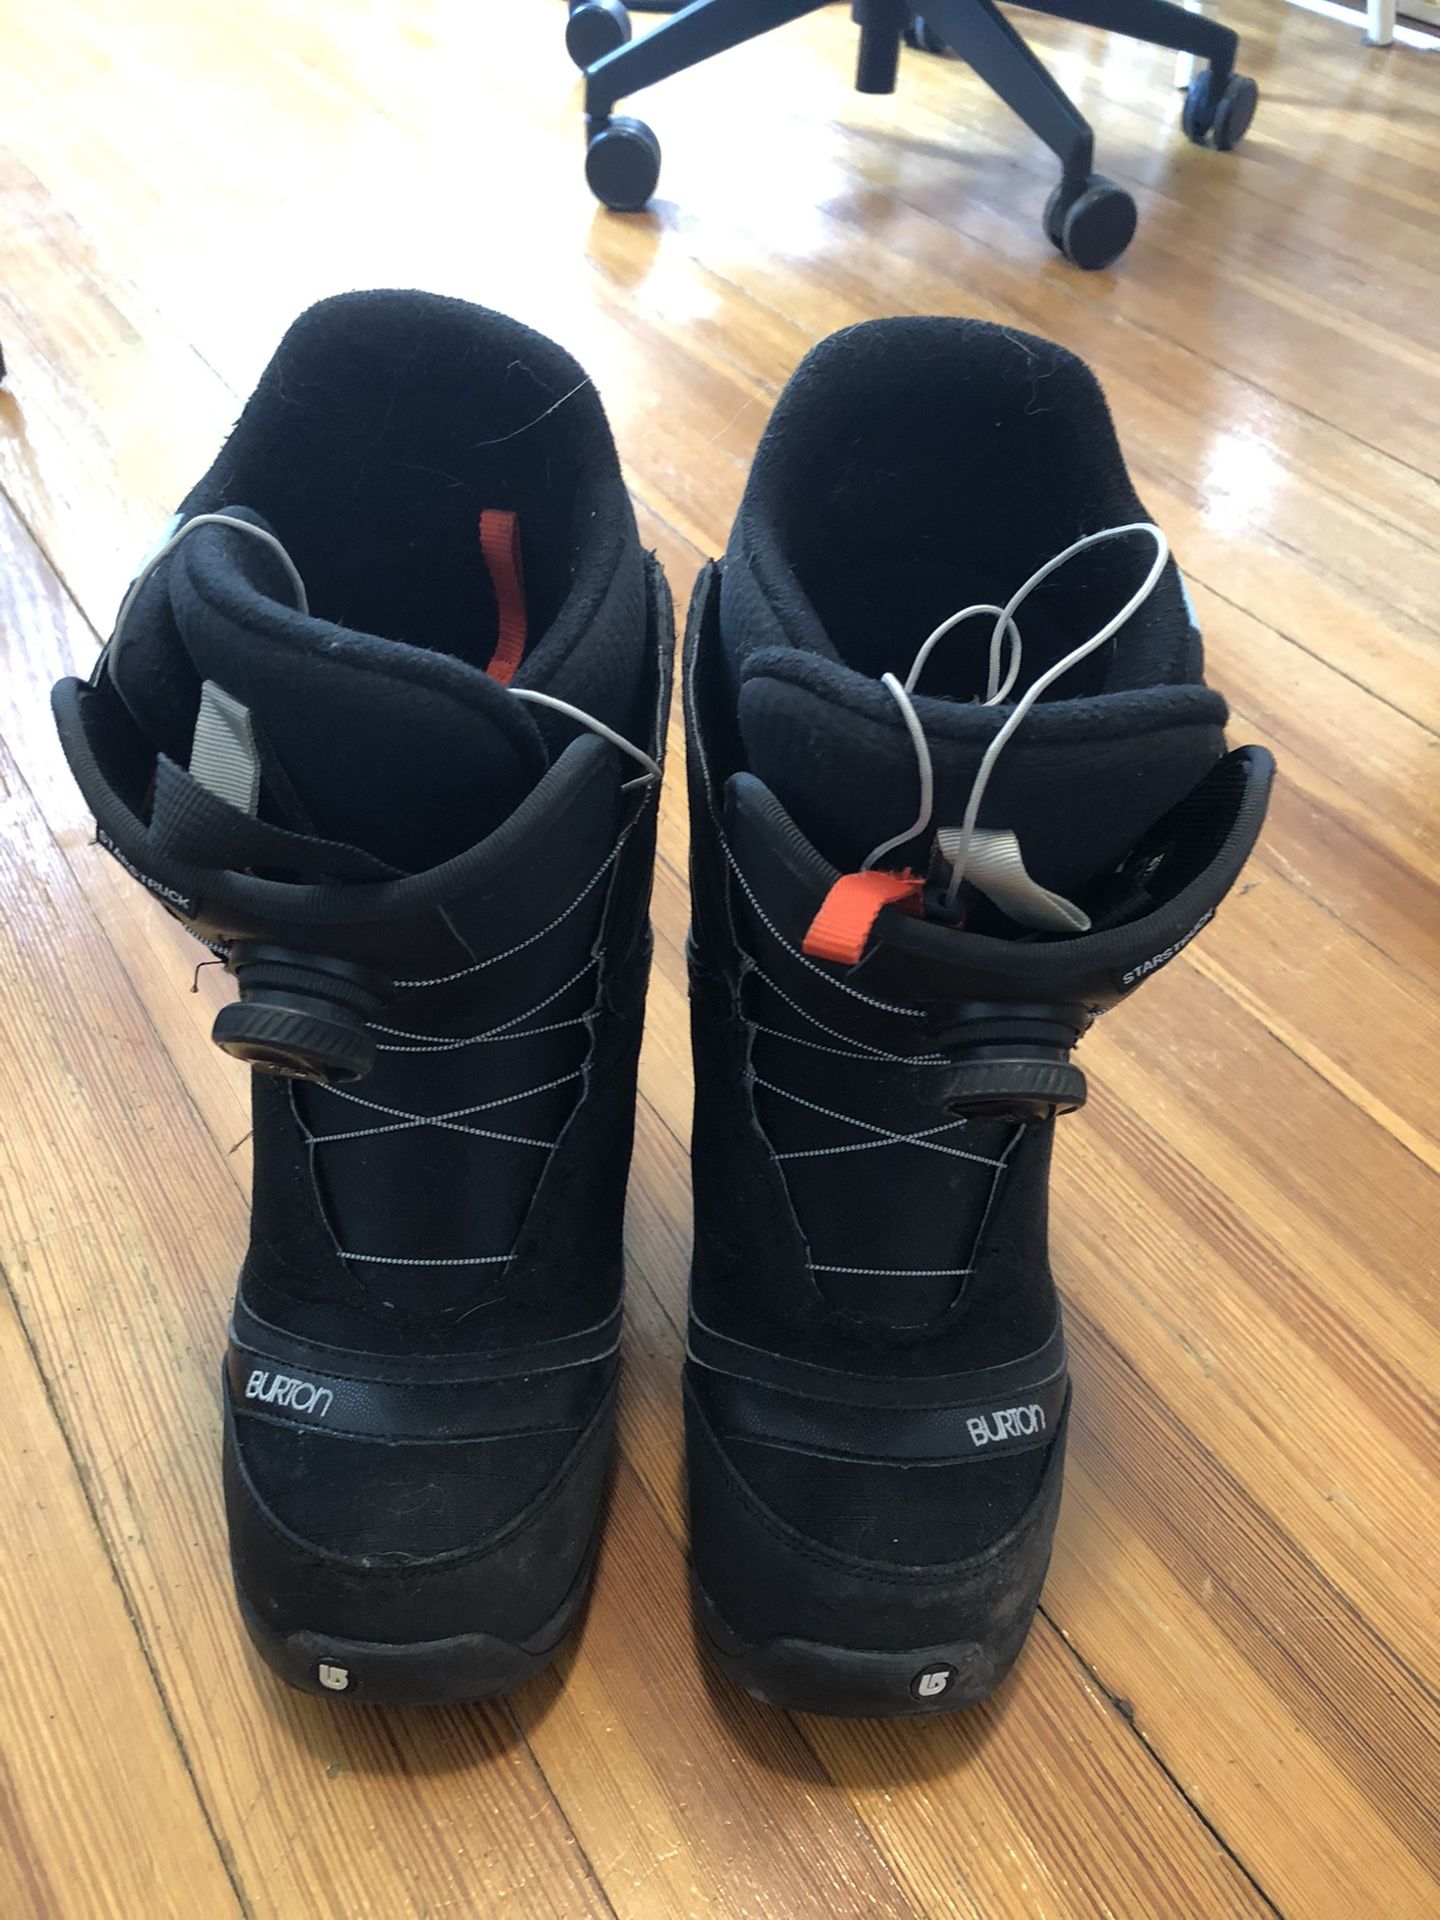 Burton Snowboard Boots (Size 9 Womens)